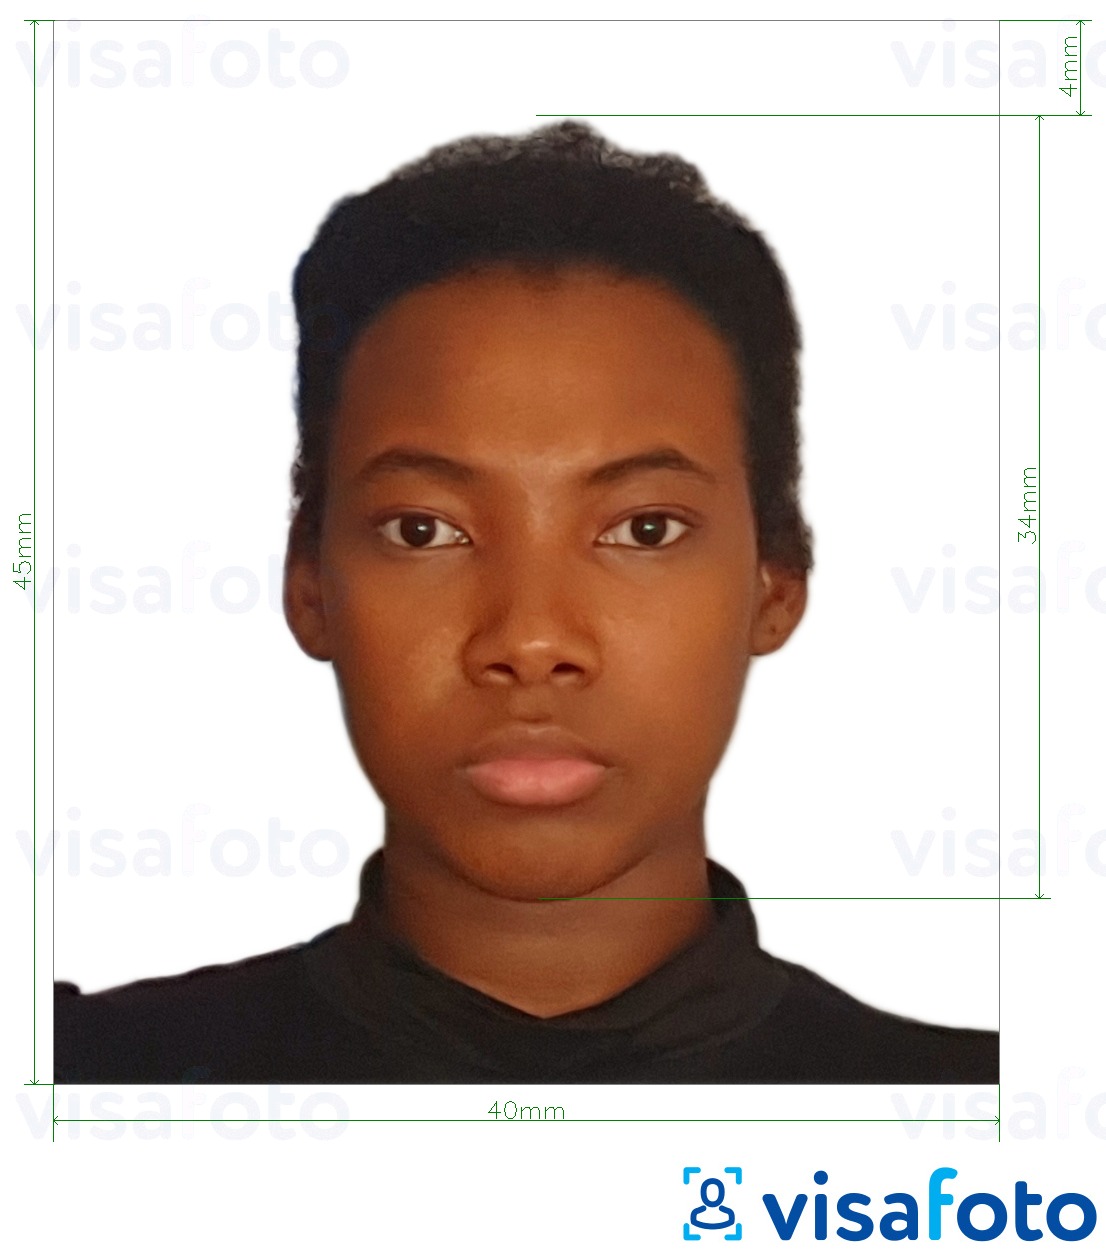 Przykład zdjęcia dla Paszport Tanzanii 40x45 mm (4x4,5 cm) z podaniem dokładnego rozmiaru.